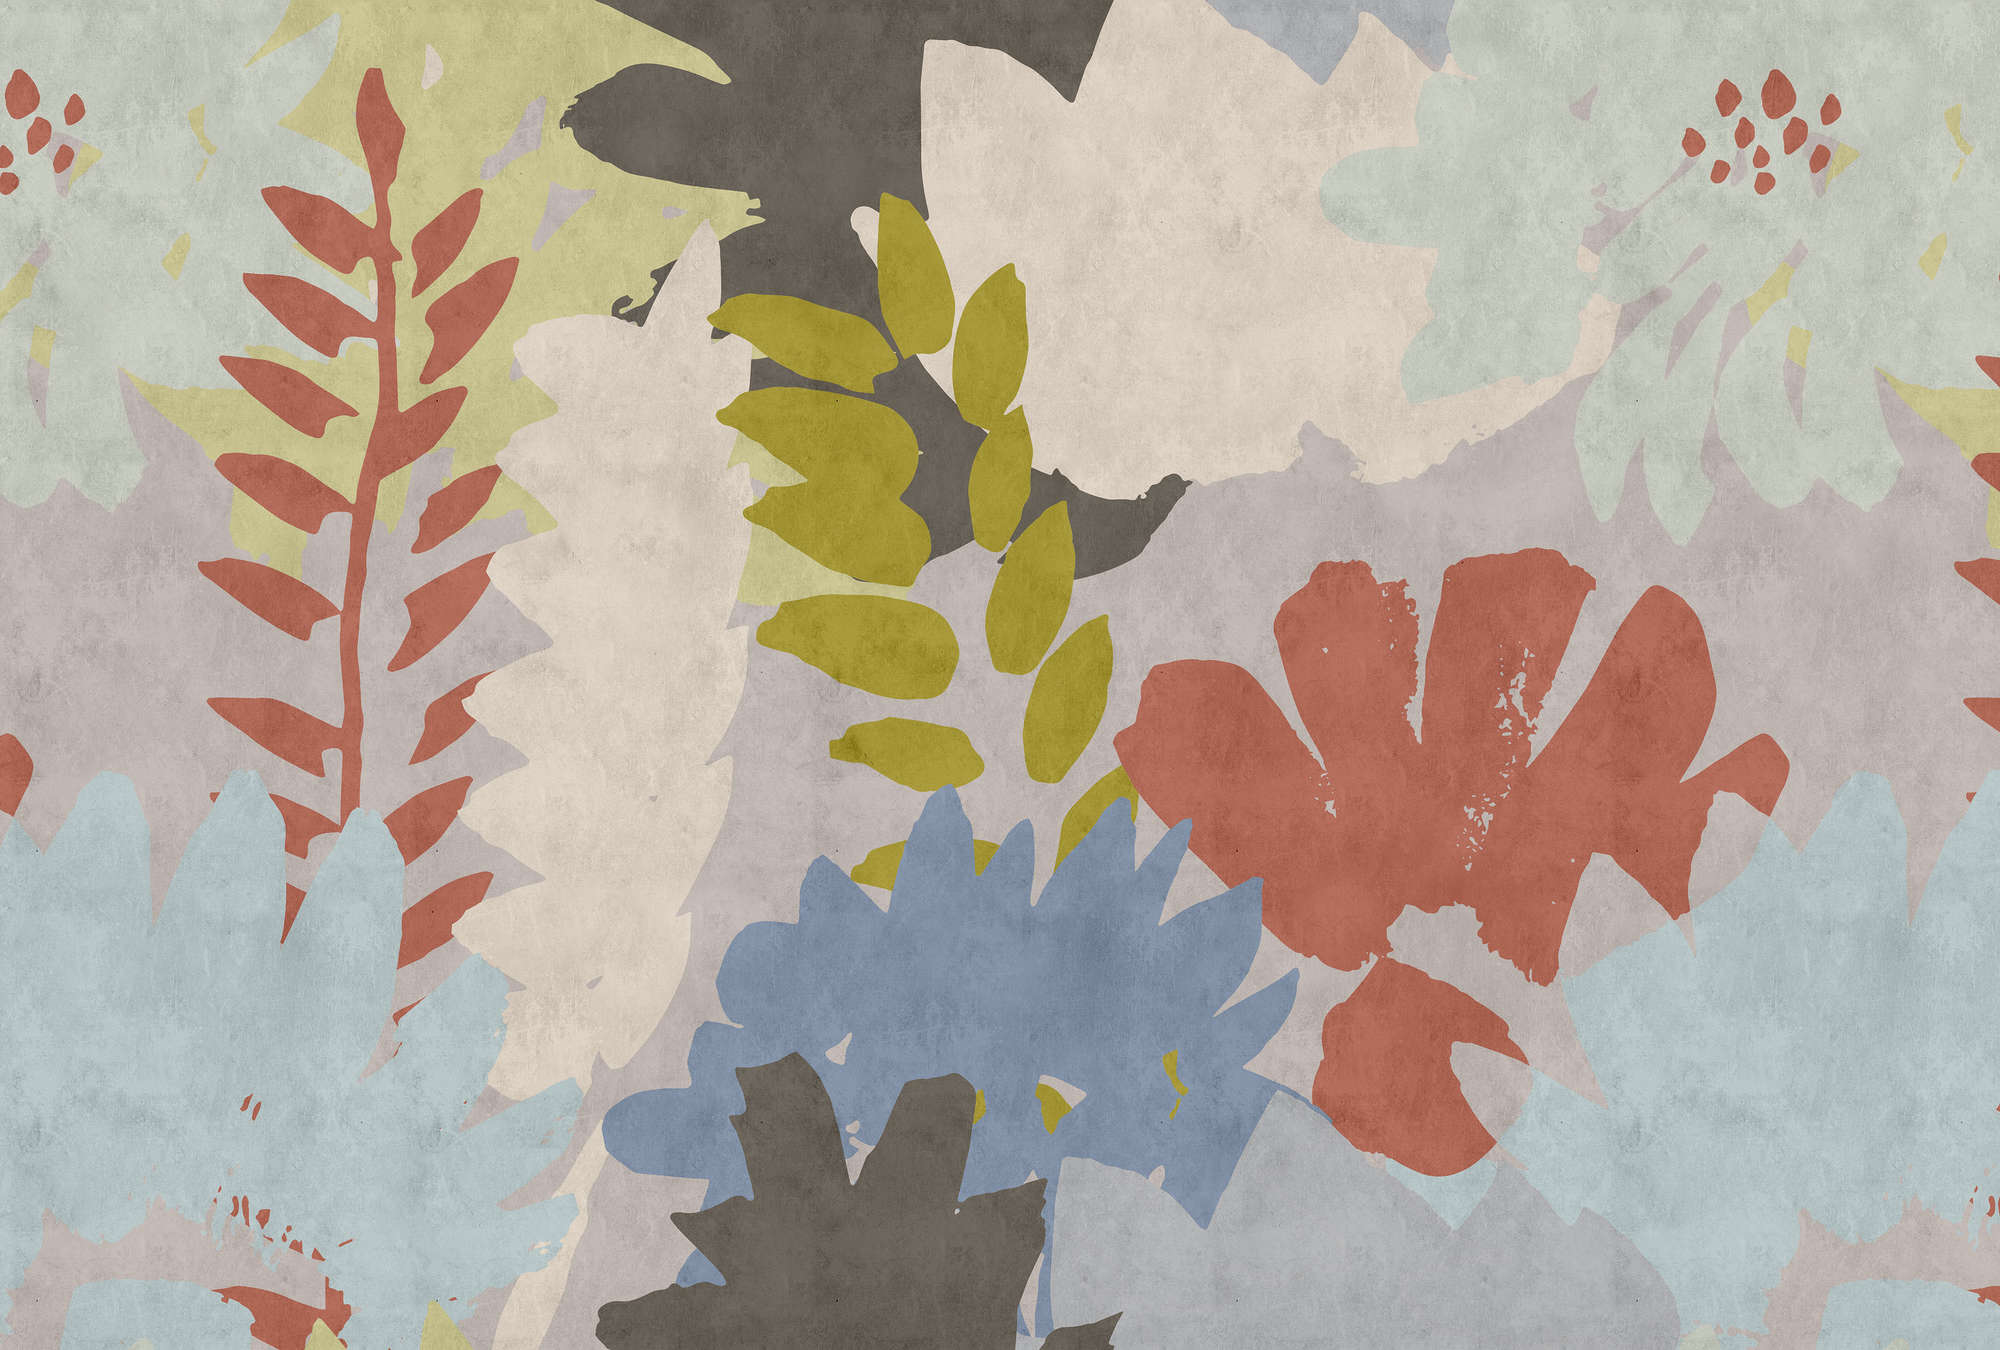             Floral Collage 3 - Abstrakte Fototapete in Löschpapier Struktur mit Blätter-Motiv – Blau, Creme | Mattes Glattvlies
        